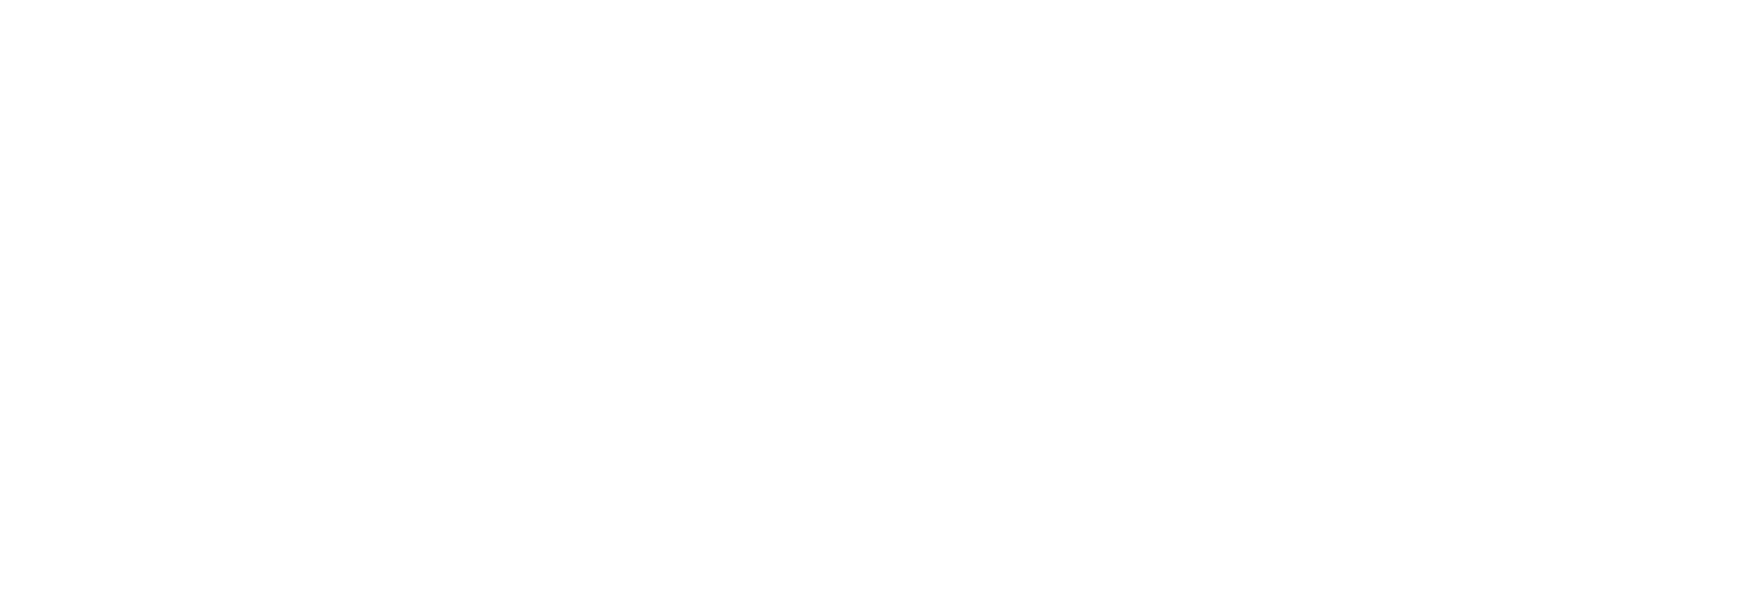 Custom designed logo for Santa Marta's new branding